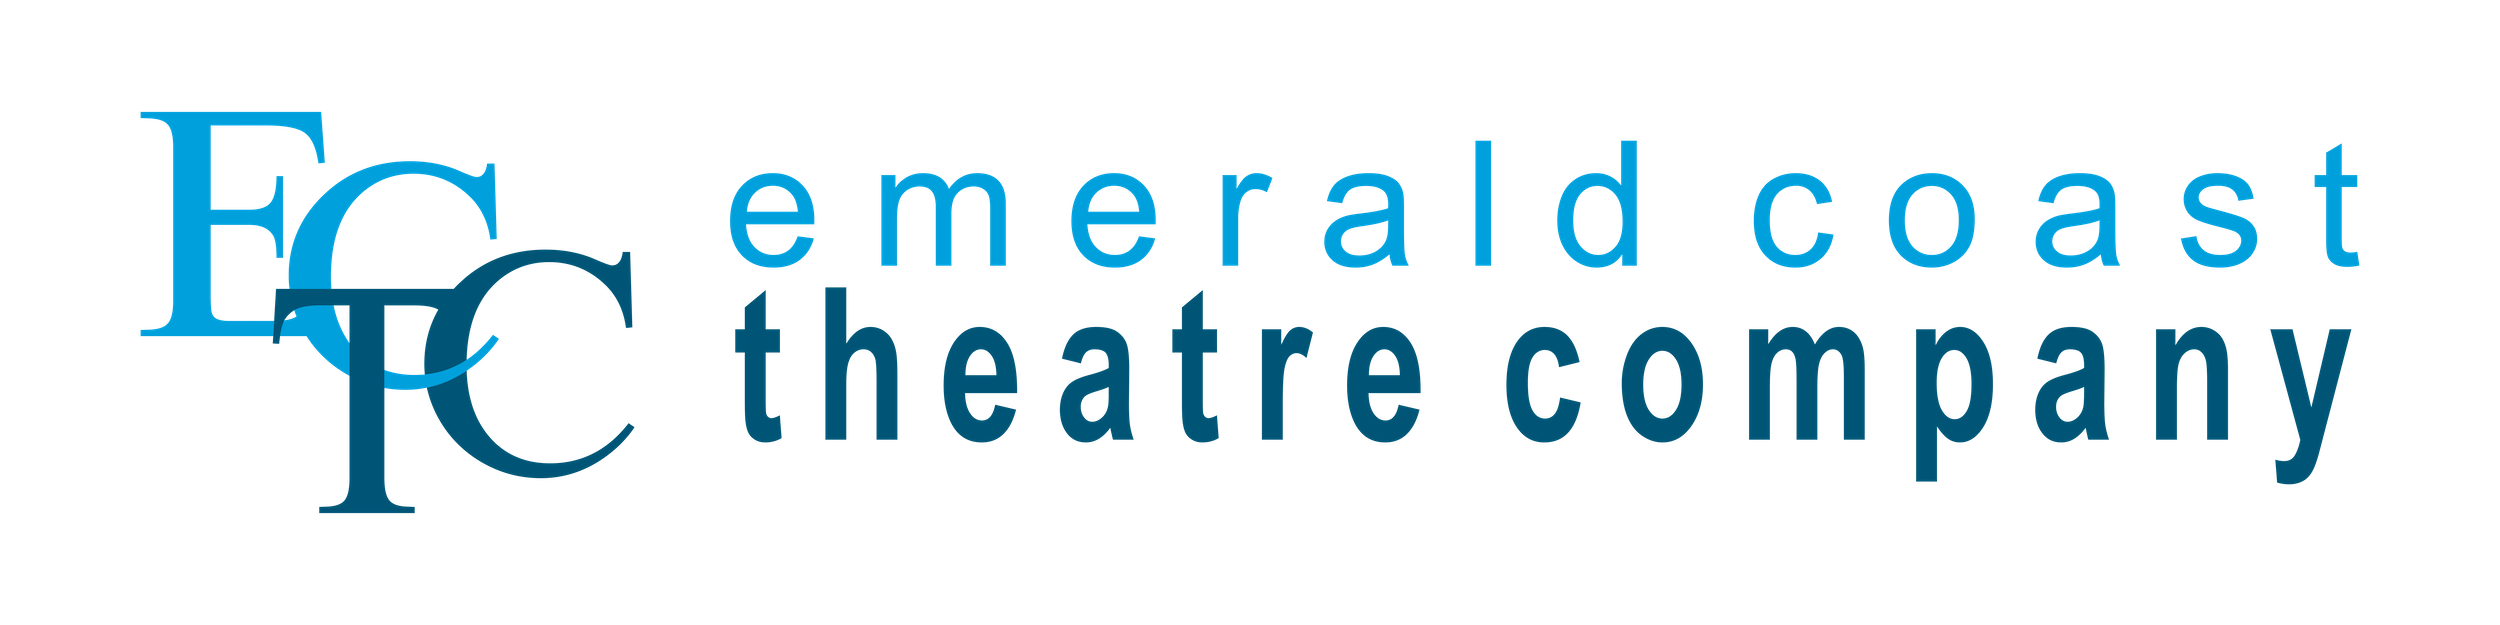 Emerald Coast Theatre Company